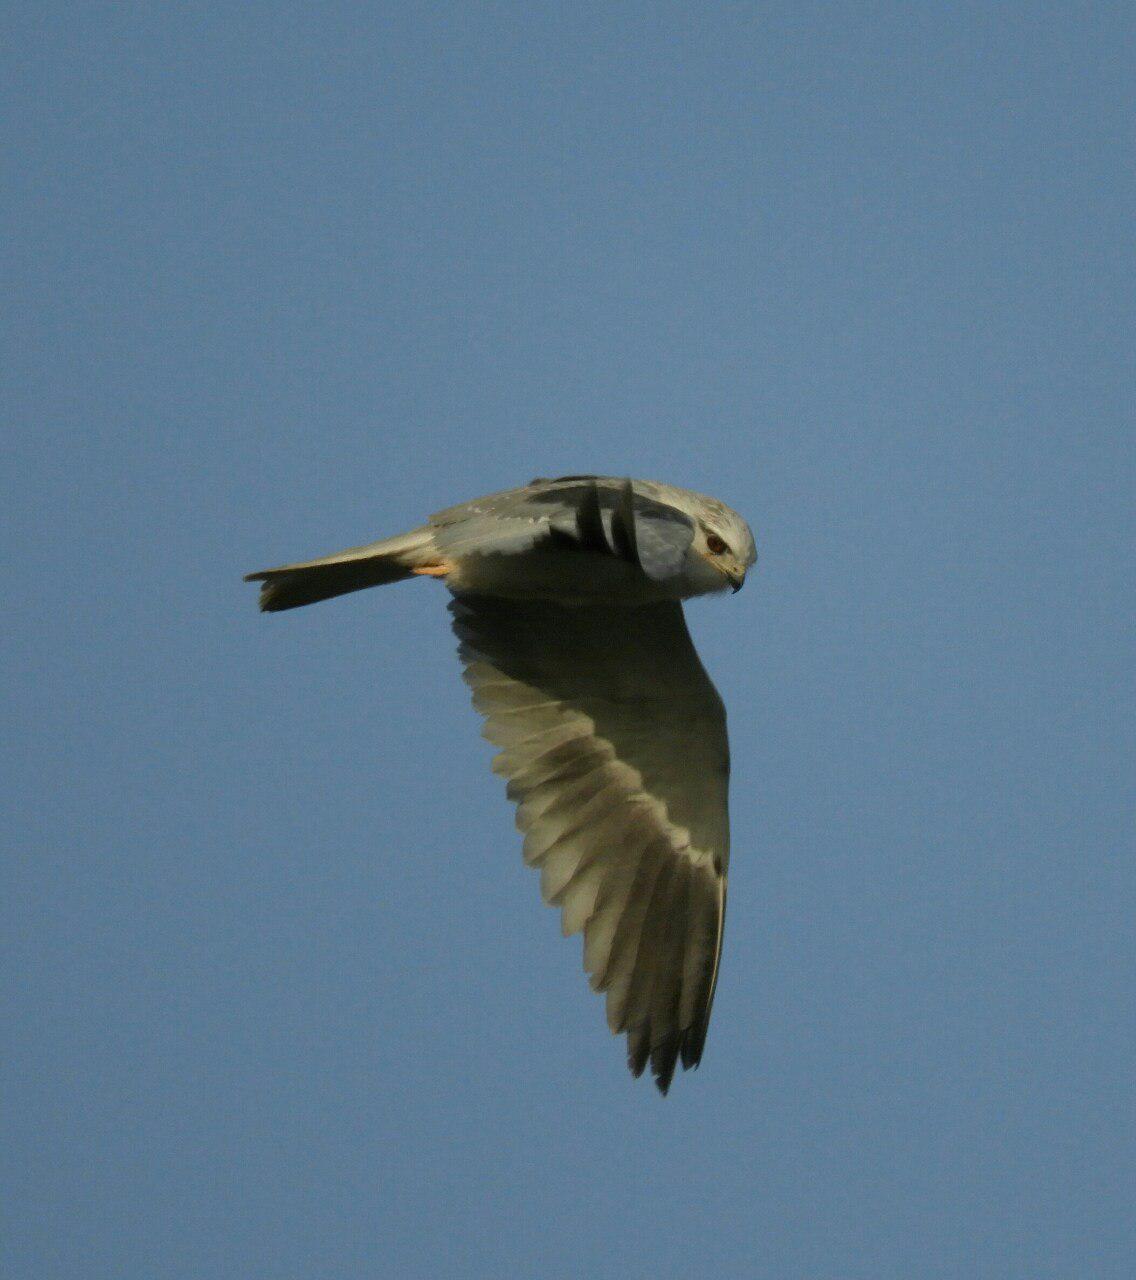 hd image of kite bird